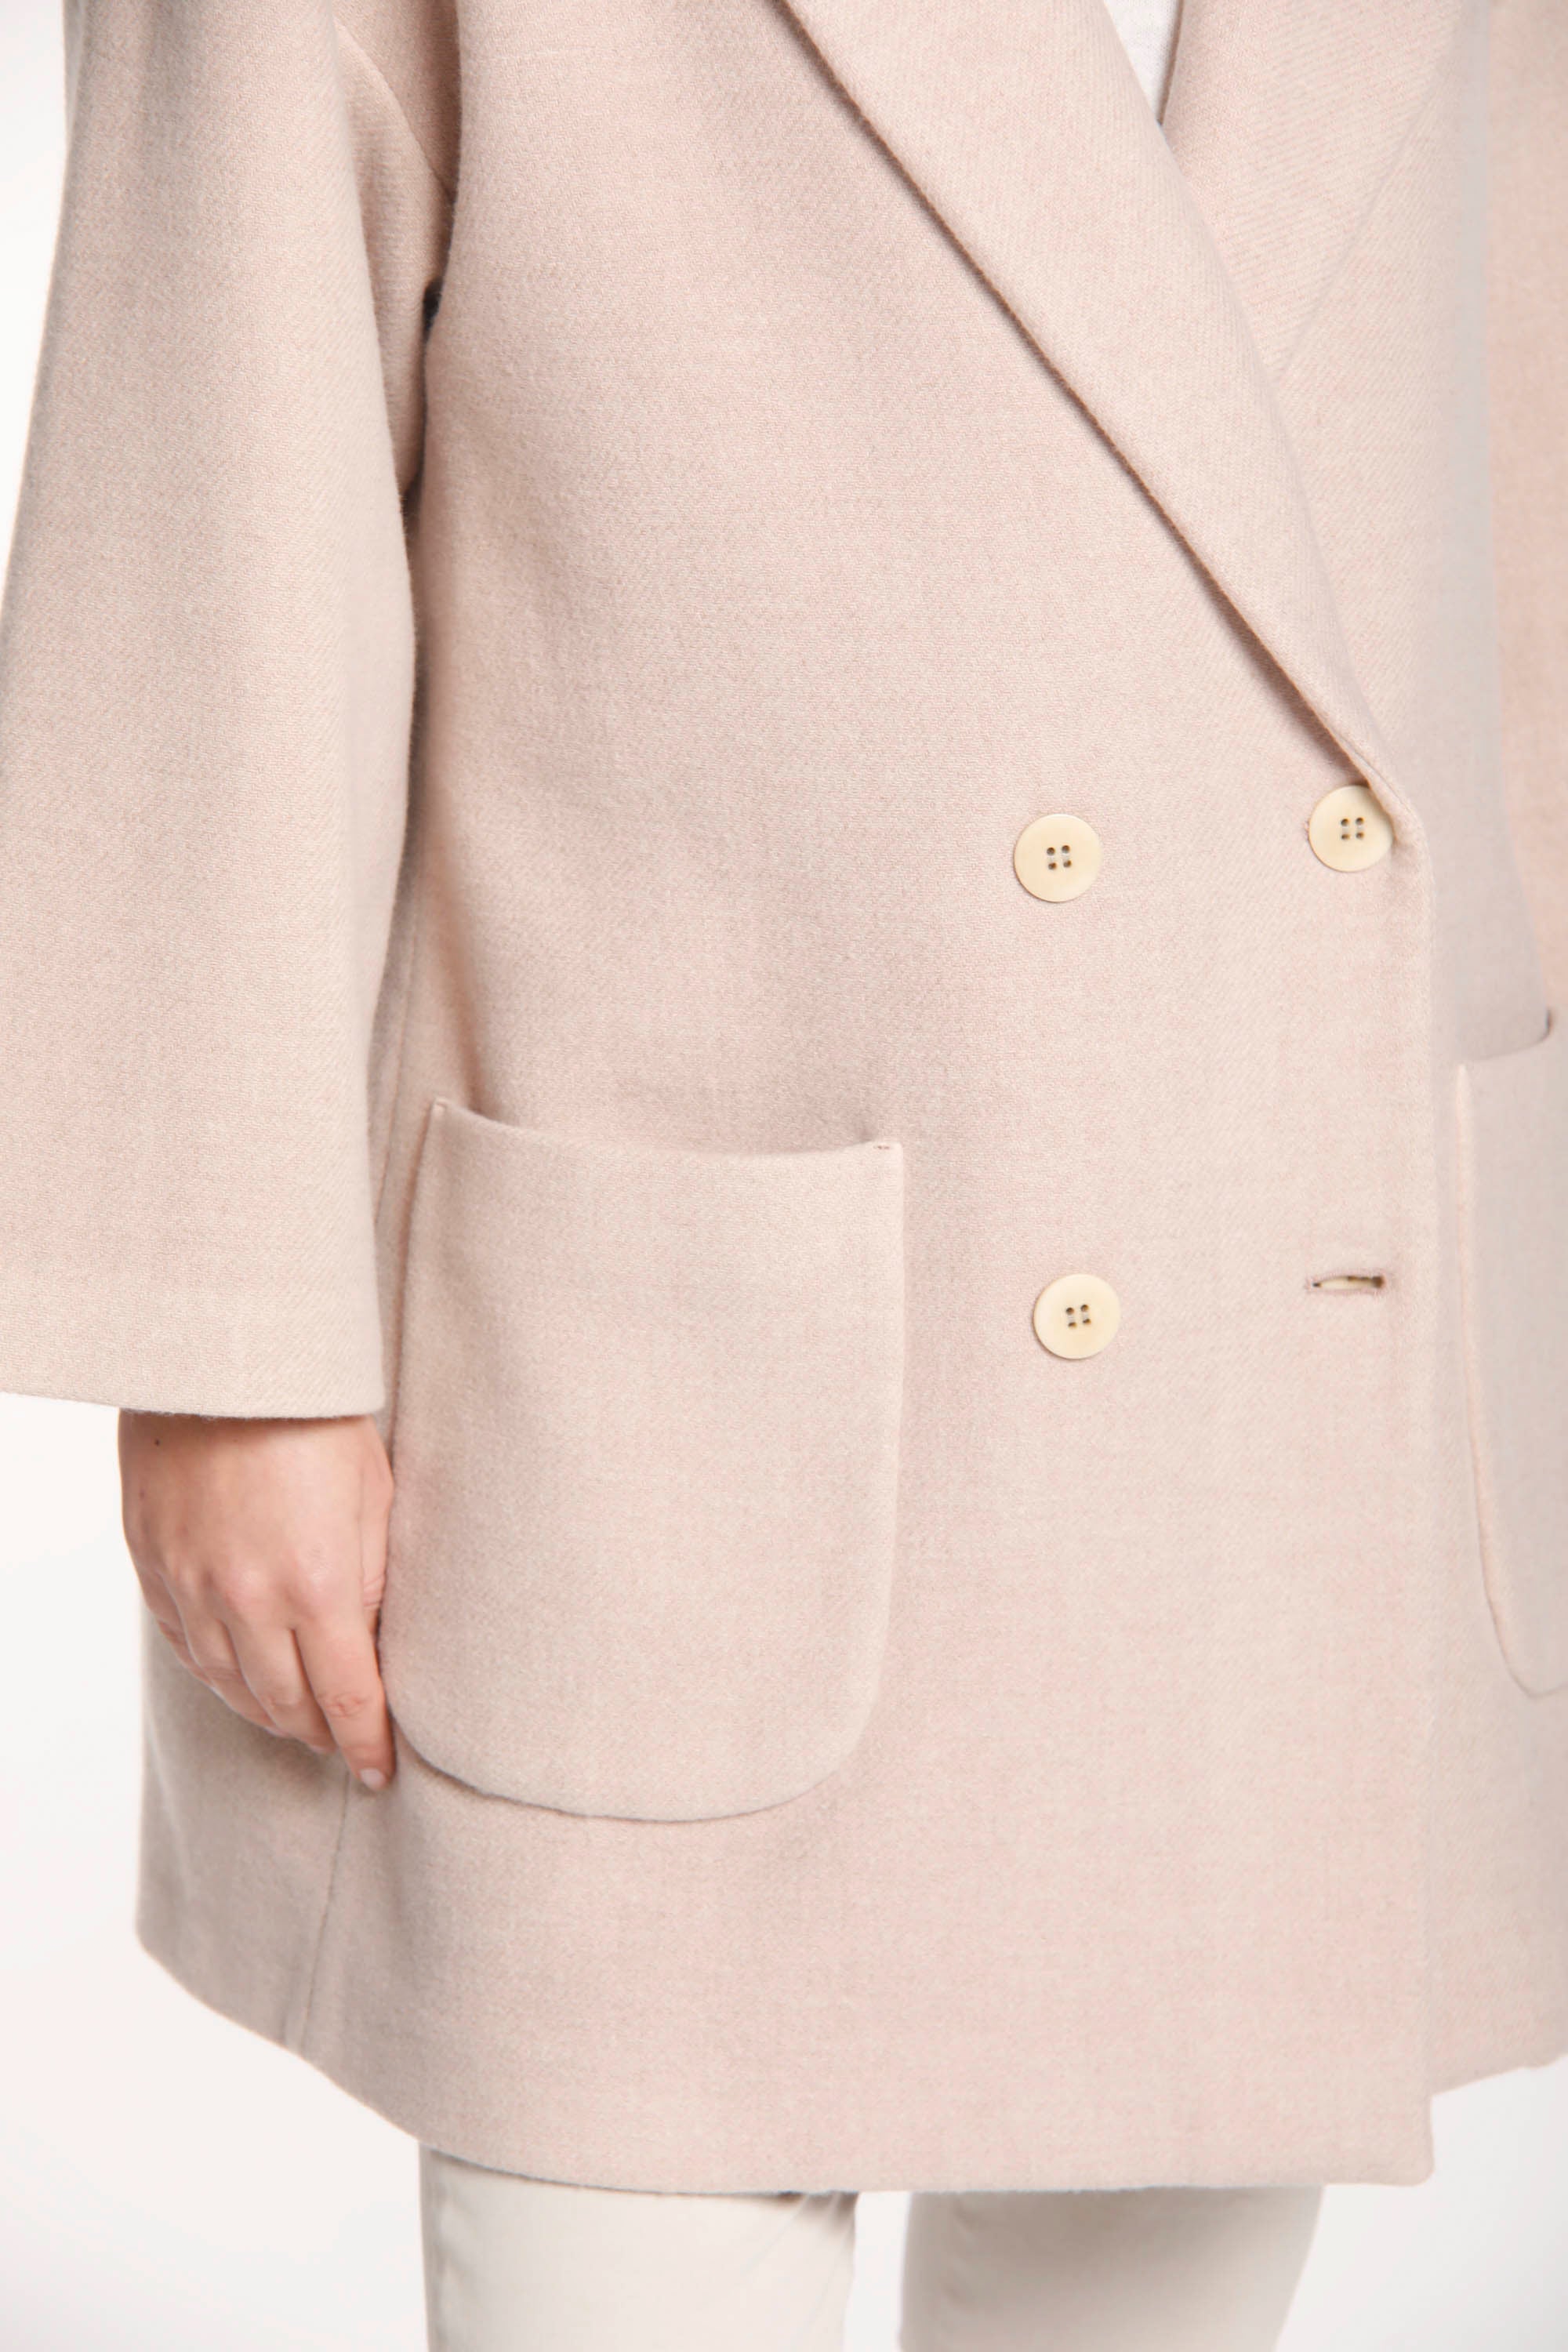 Image 3 of a women's coat in light pink wool Noemi model by Mason's